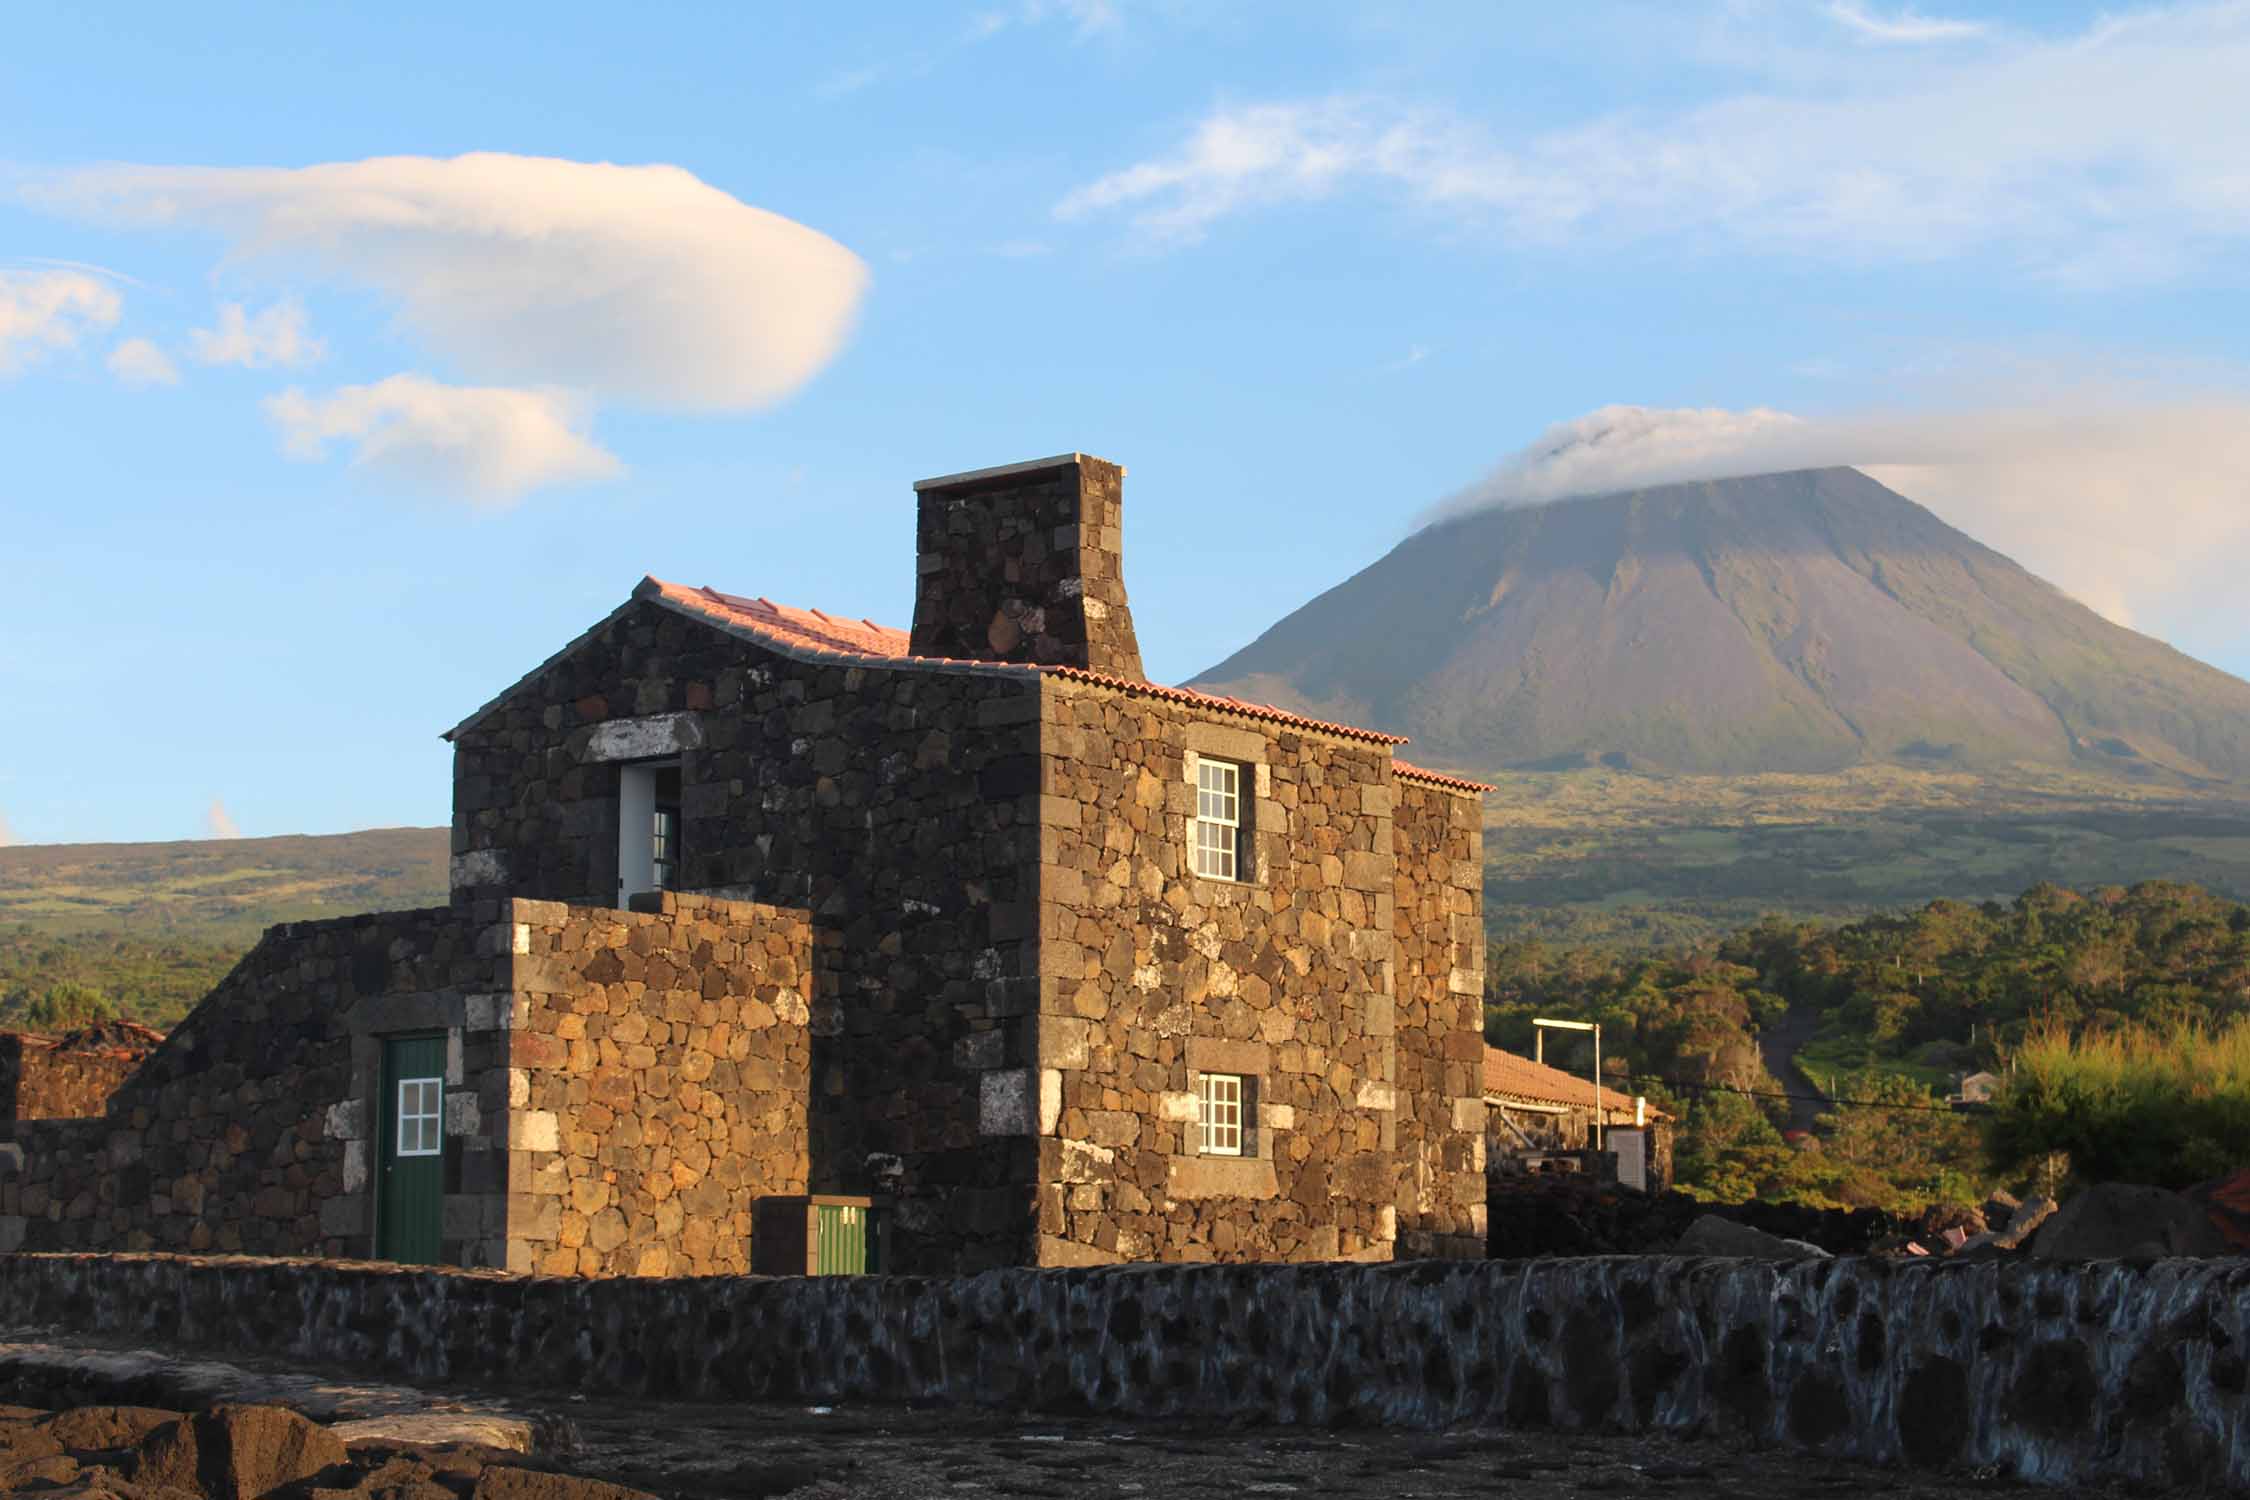 Açores, Île de Pico, maison typique, volcan de Pico